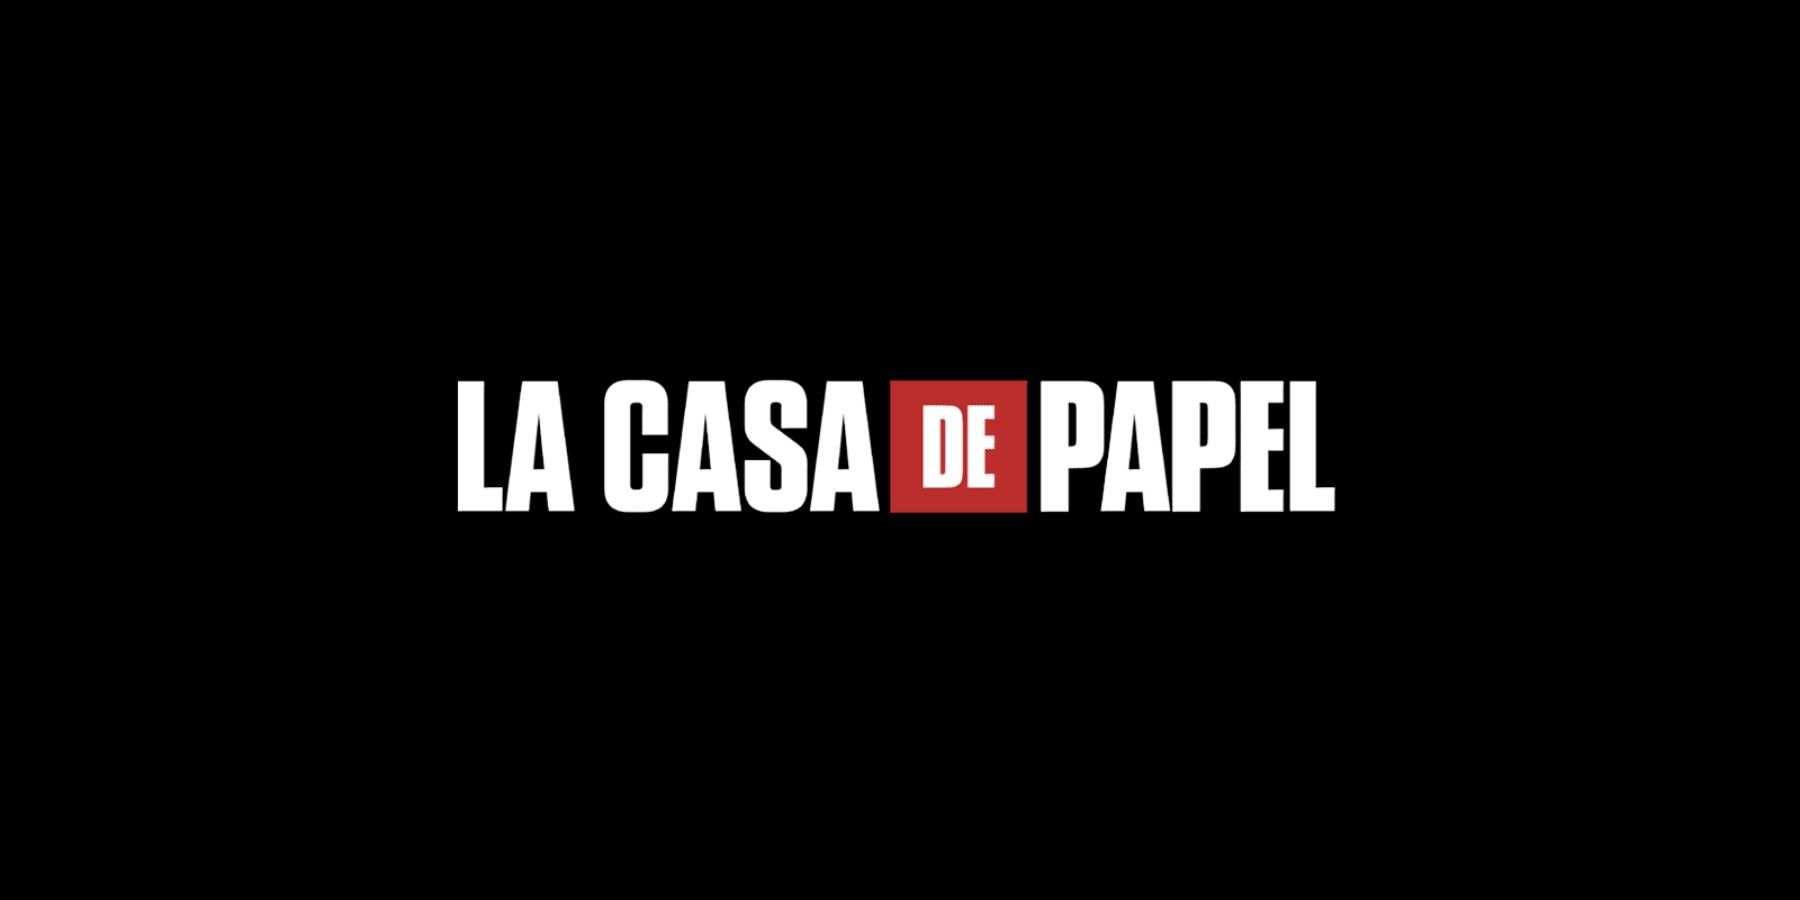 The title screen showing the title of the show &quot;La Casa de Papel&quot; or Money Heist.